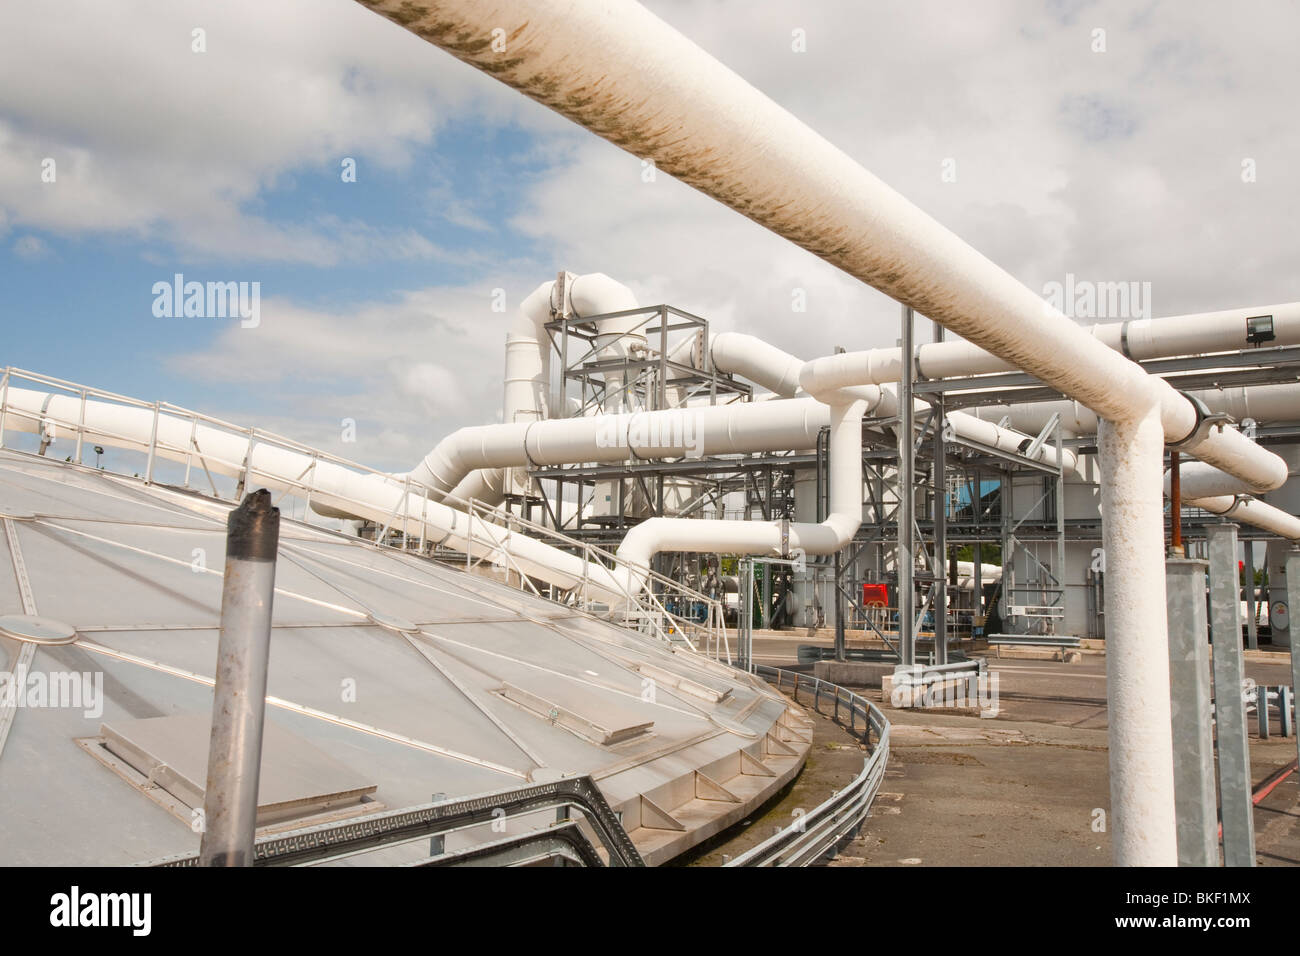 Daveyhulme impianto di depurazione delle acque reflue in Manchester utilizza caldaie per convertire bio gas dai rifiuti umani di elettricità. Foto Stock